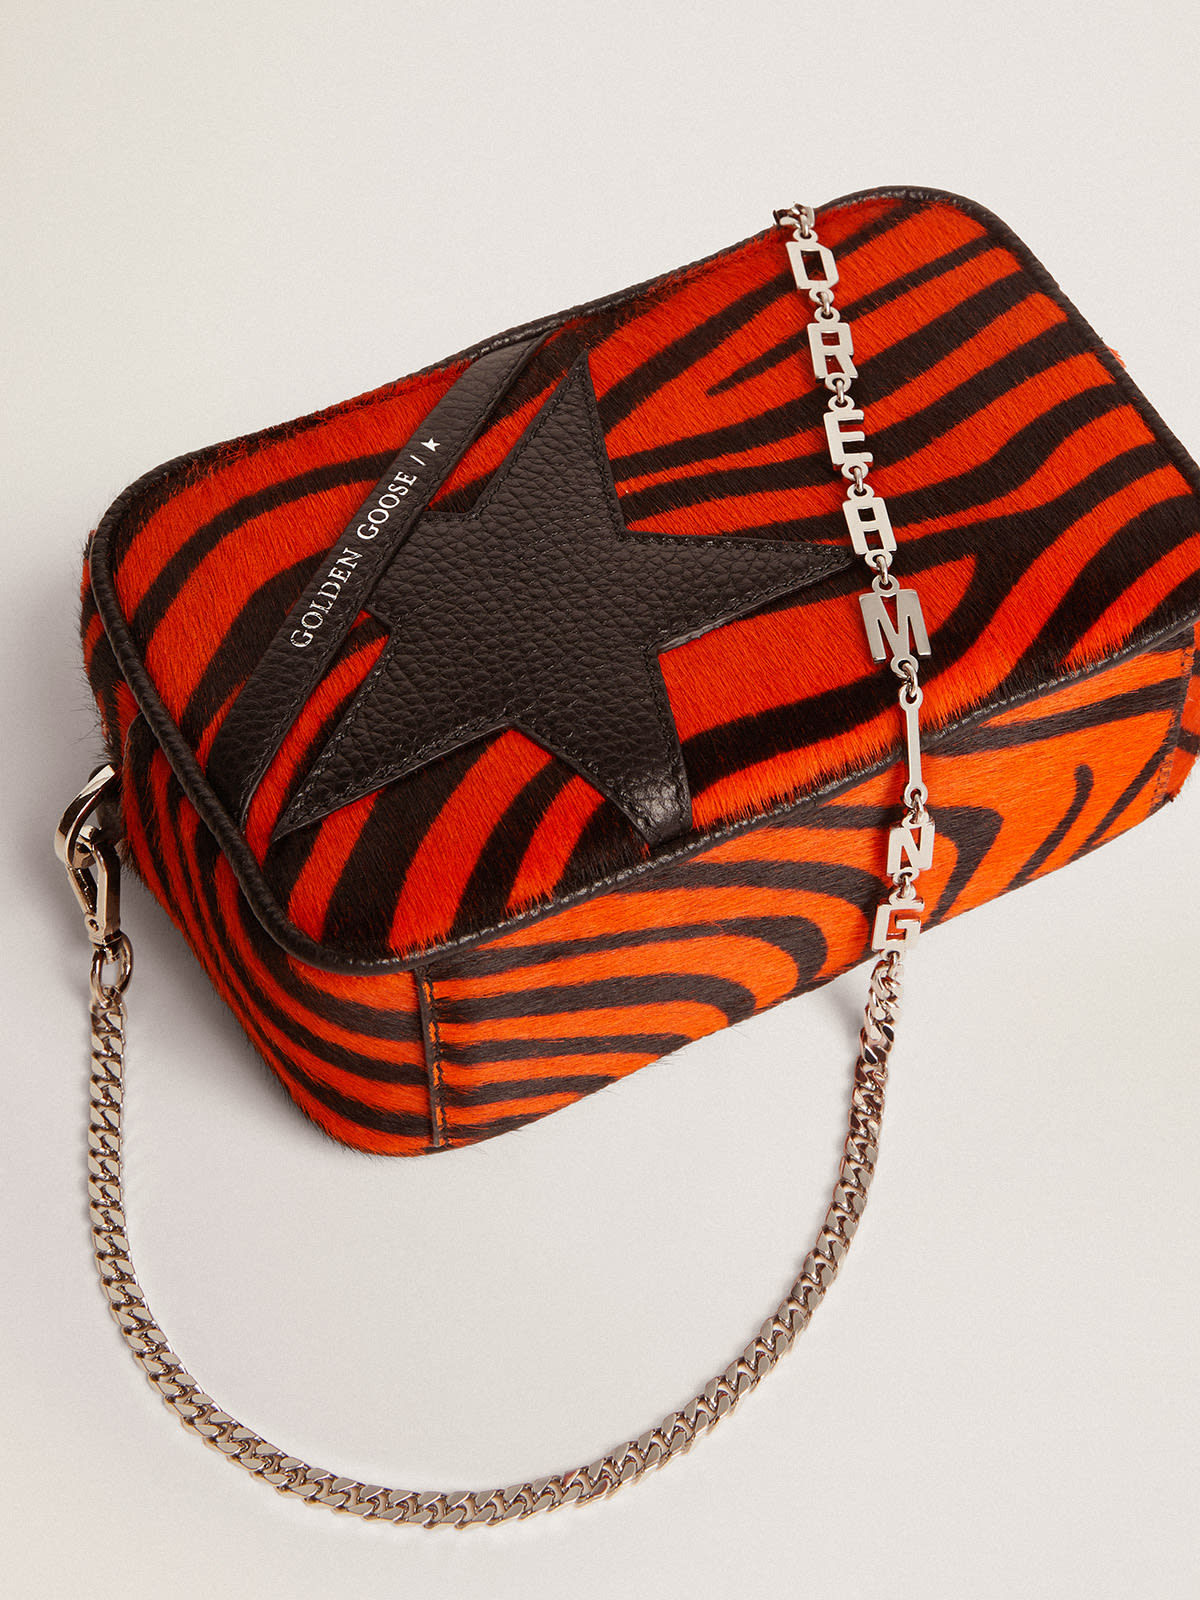 Golden Goose - Mini Star Bag de piel de potro con estampado de tigre naranja y estrella negra in 